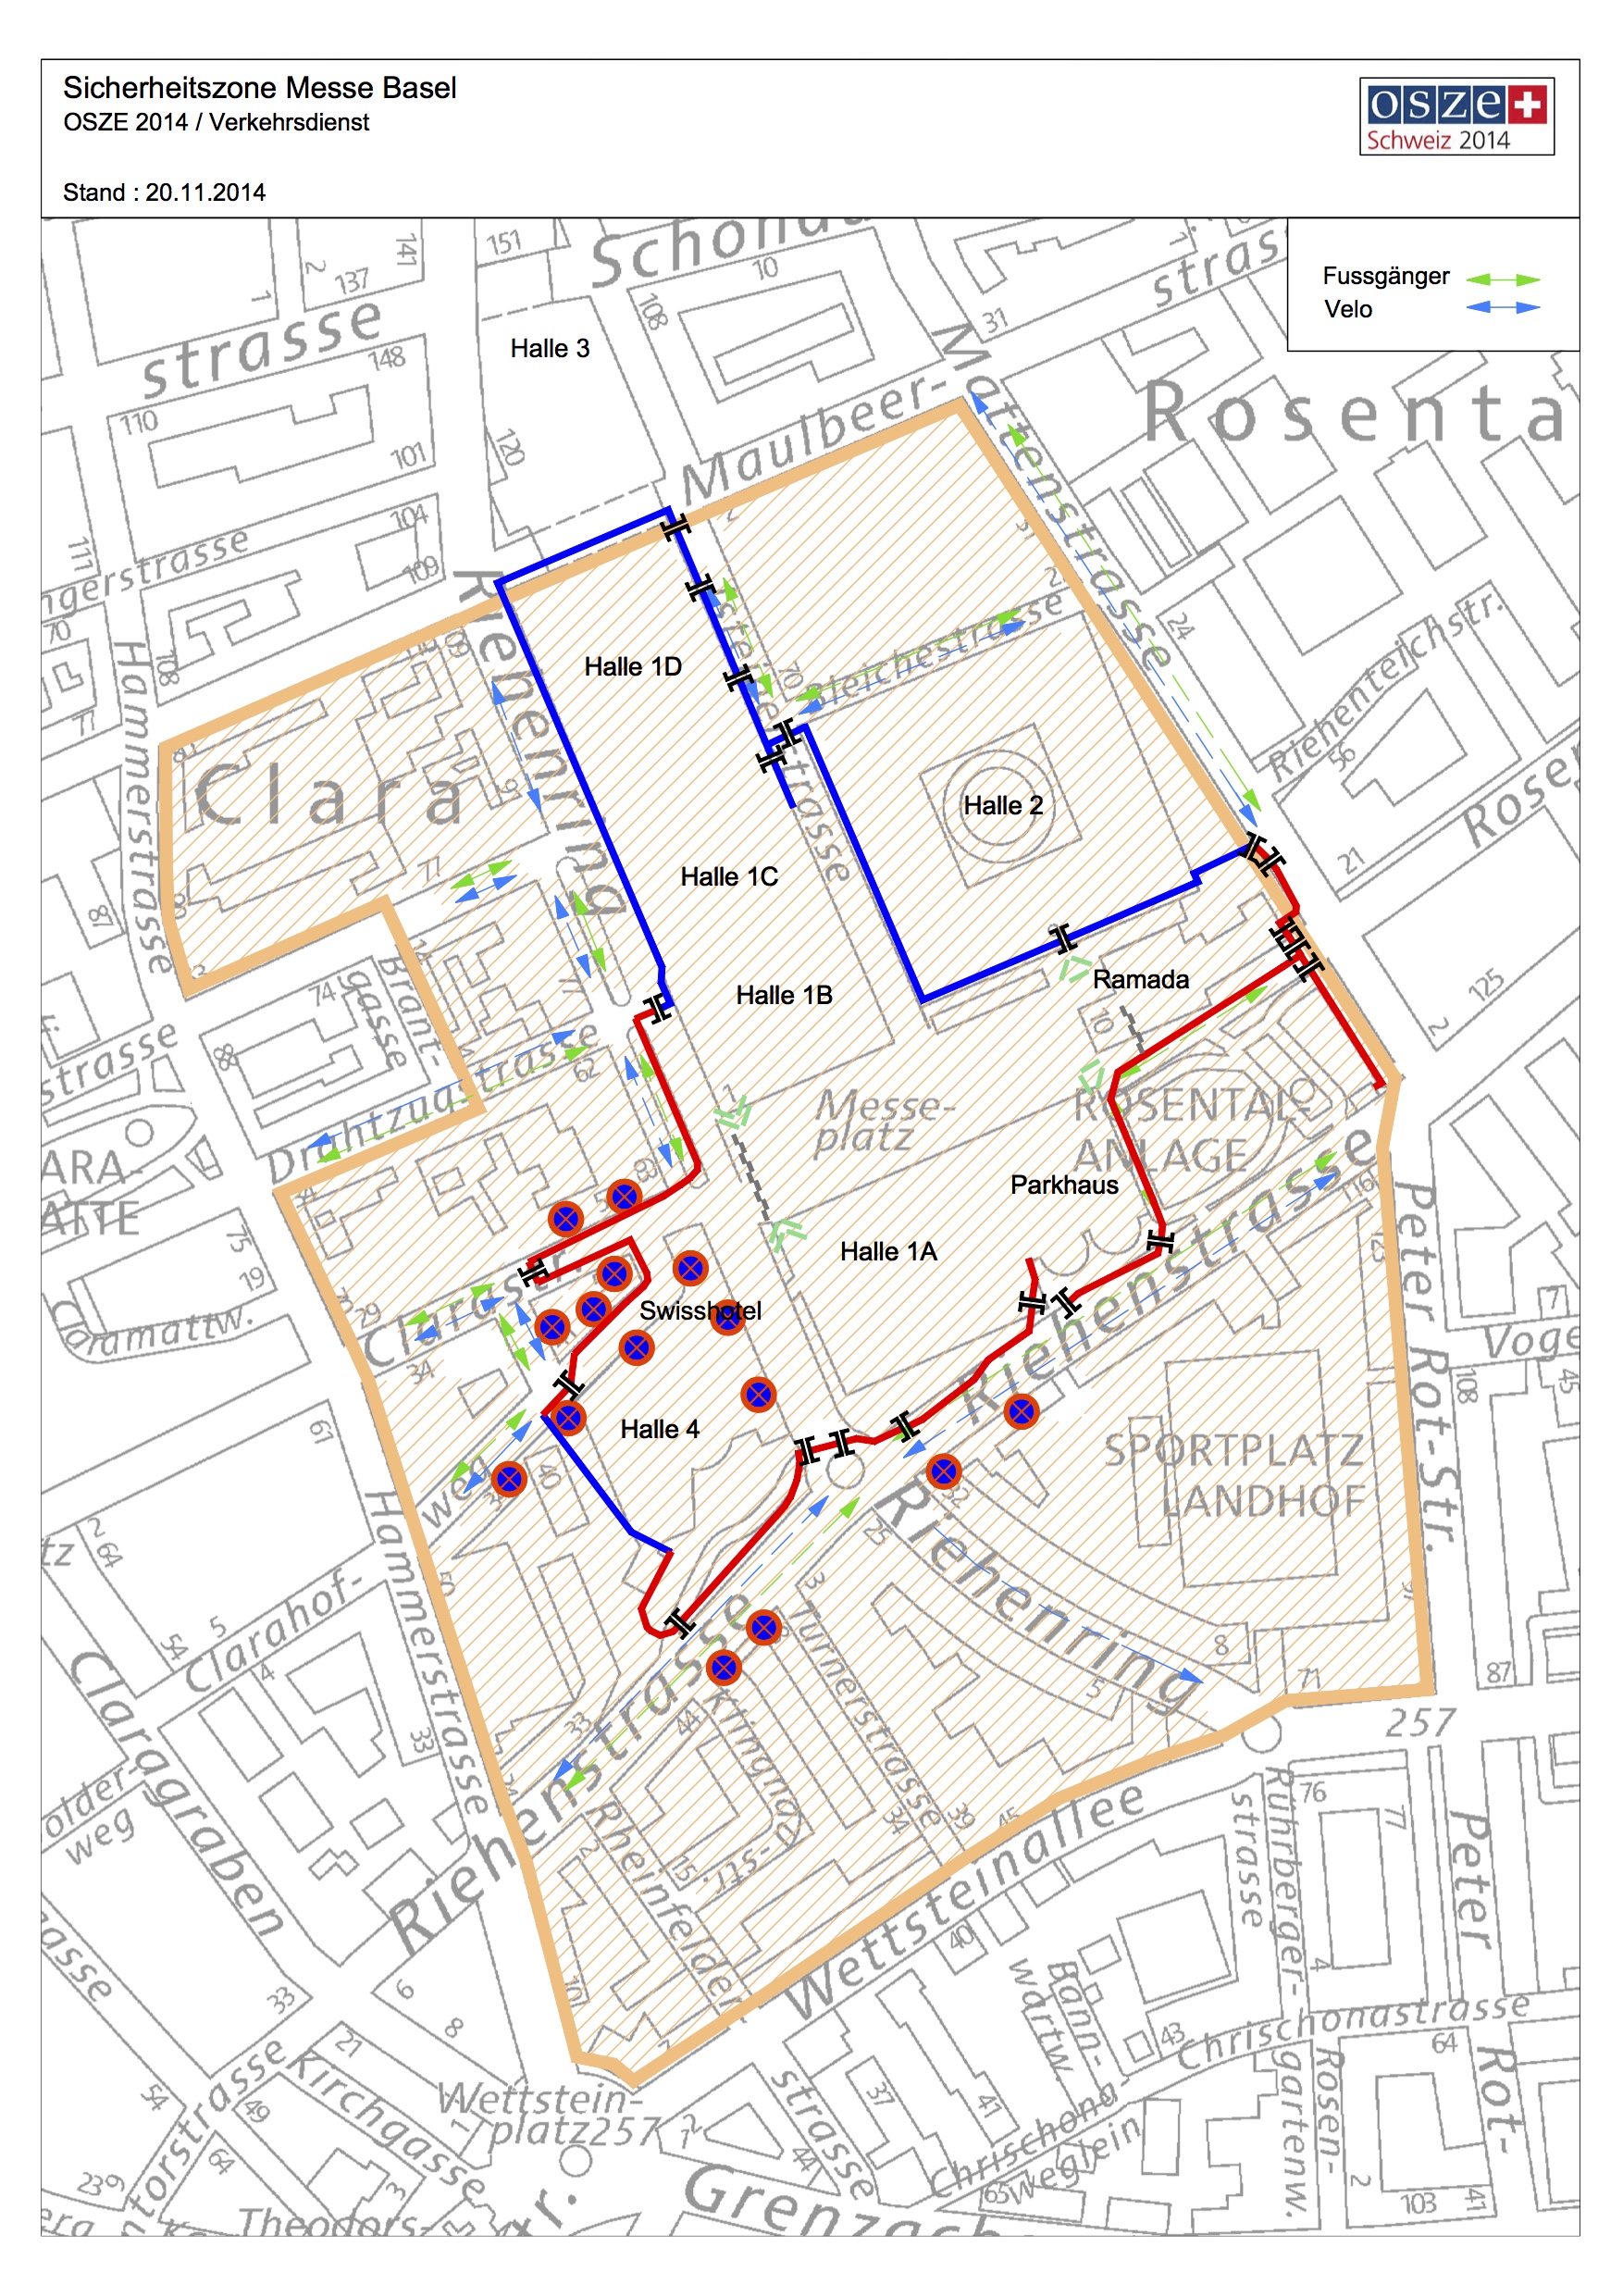 Sicherheitszone Messeareal: Das Gebiet, das rot (Gitter) und blau (bauliche Grenze) umrandet ist, ist Sperrzone, innerhalb der gelb-braunen Umrandung ist der motorisierte Verkehr eingeschränkt.